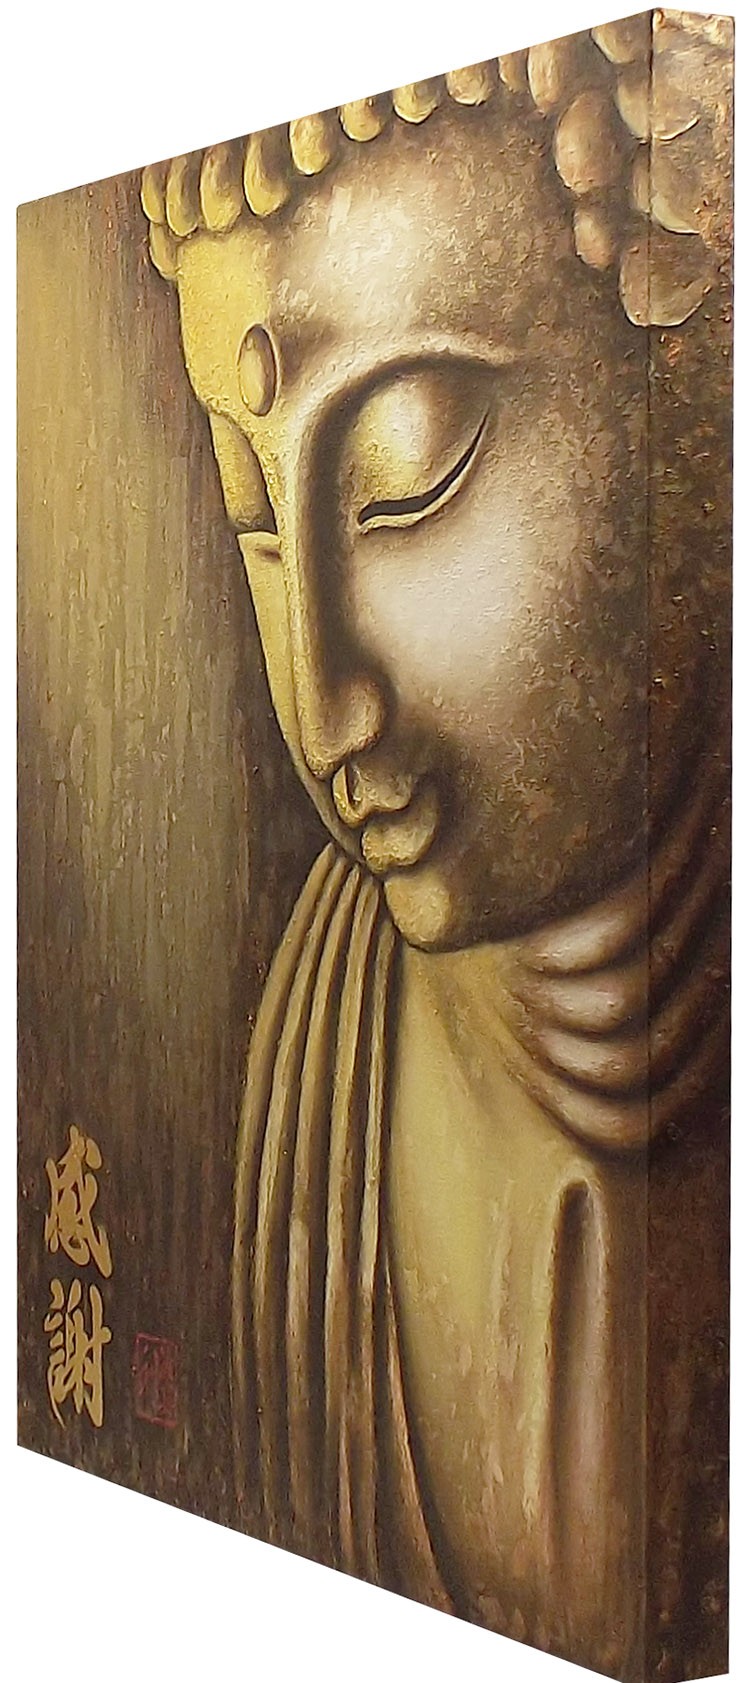 Quadro Buda Gratidão Acrílico sobre tela Pintado à Mão 100x80cm